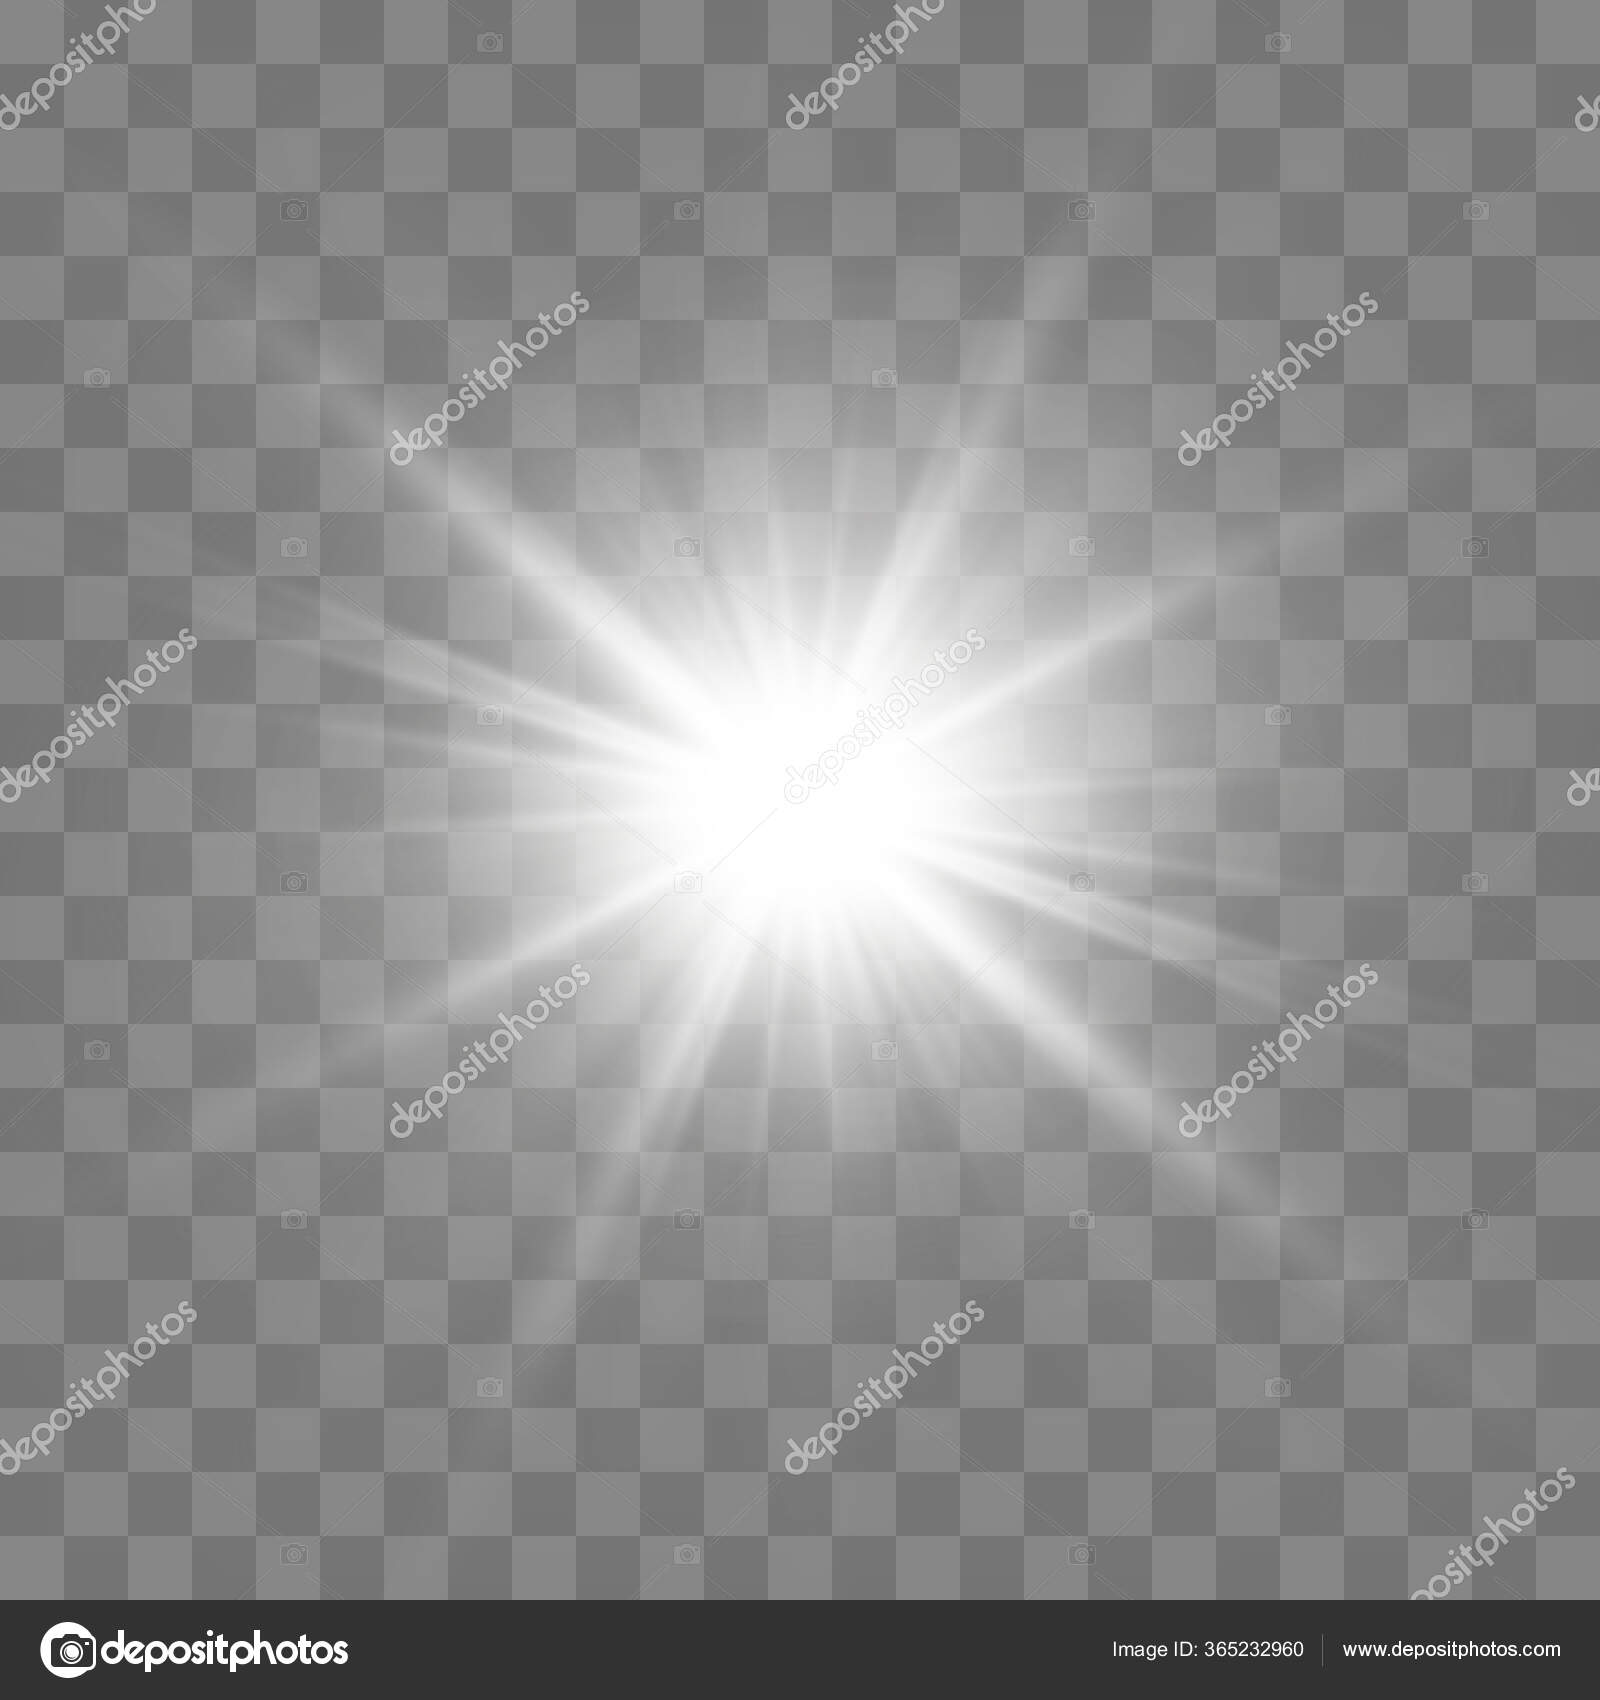 https://st3.depositphotos.com/34388950/36523/v/1600/depositphotos_365232960-stock-illustration-white-glowing-light-burst-explosion.jpg